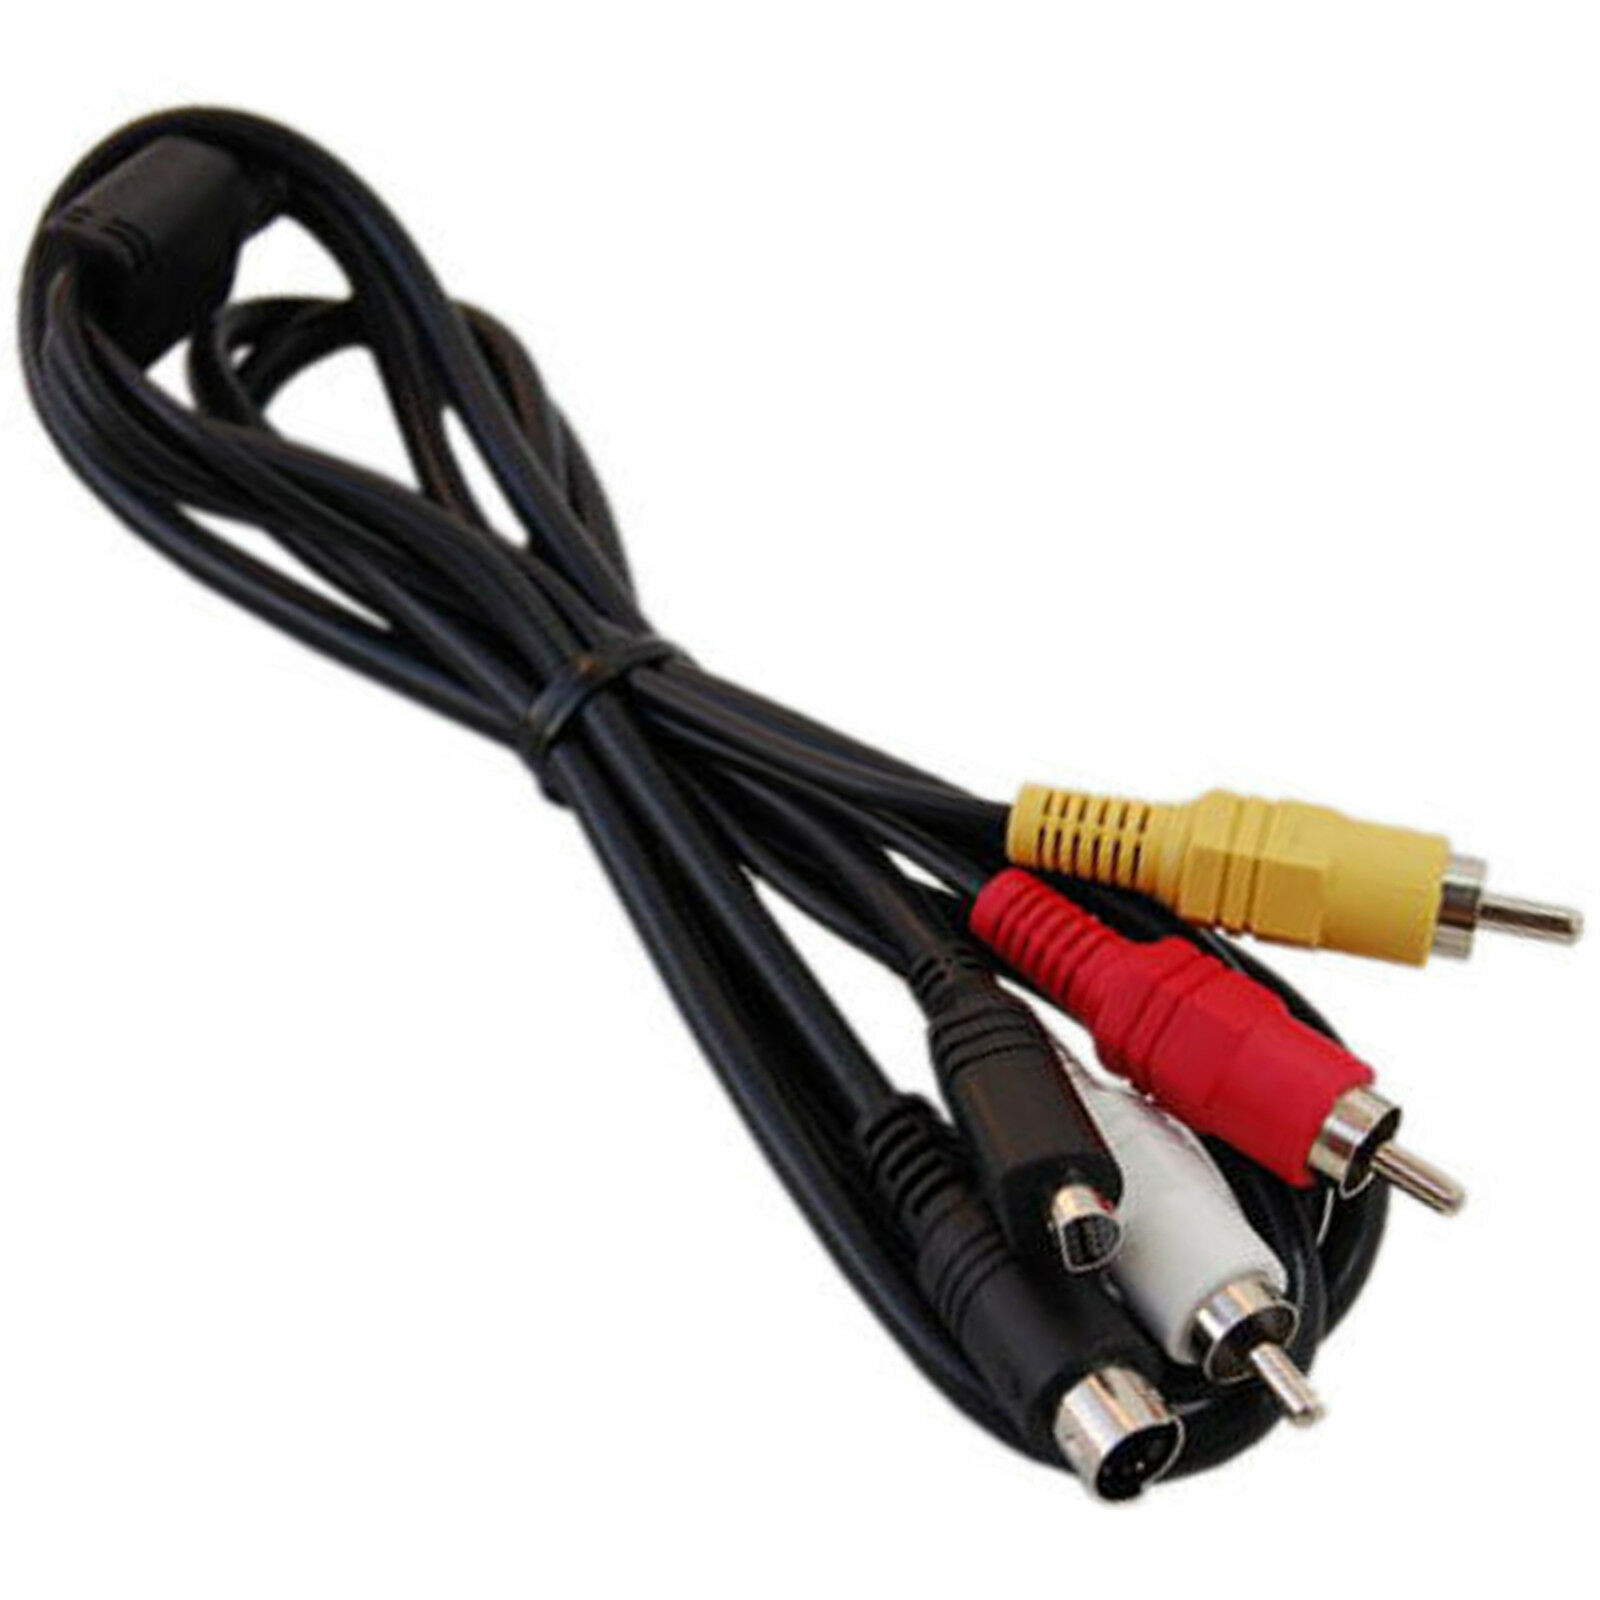 VMC-15Fs/VMC15FS AV Cable Cord for SONY Handycam DCR-HC28 DCR-HC38 DCR-HC48 DCR-HC52